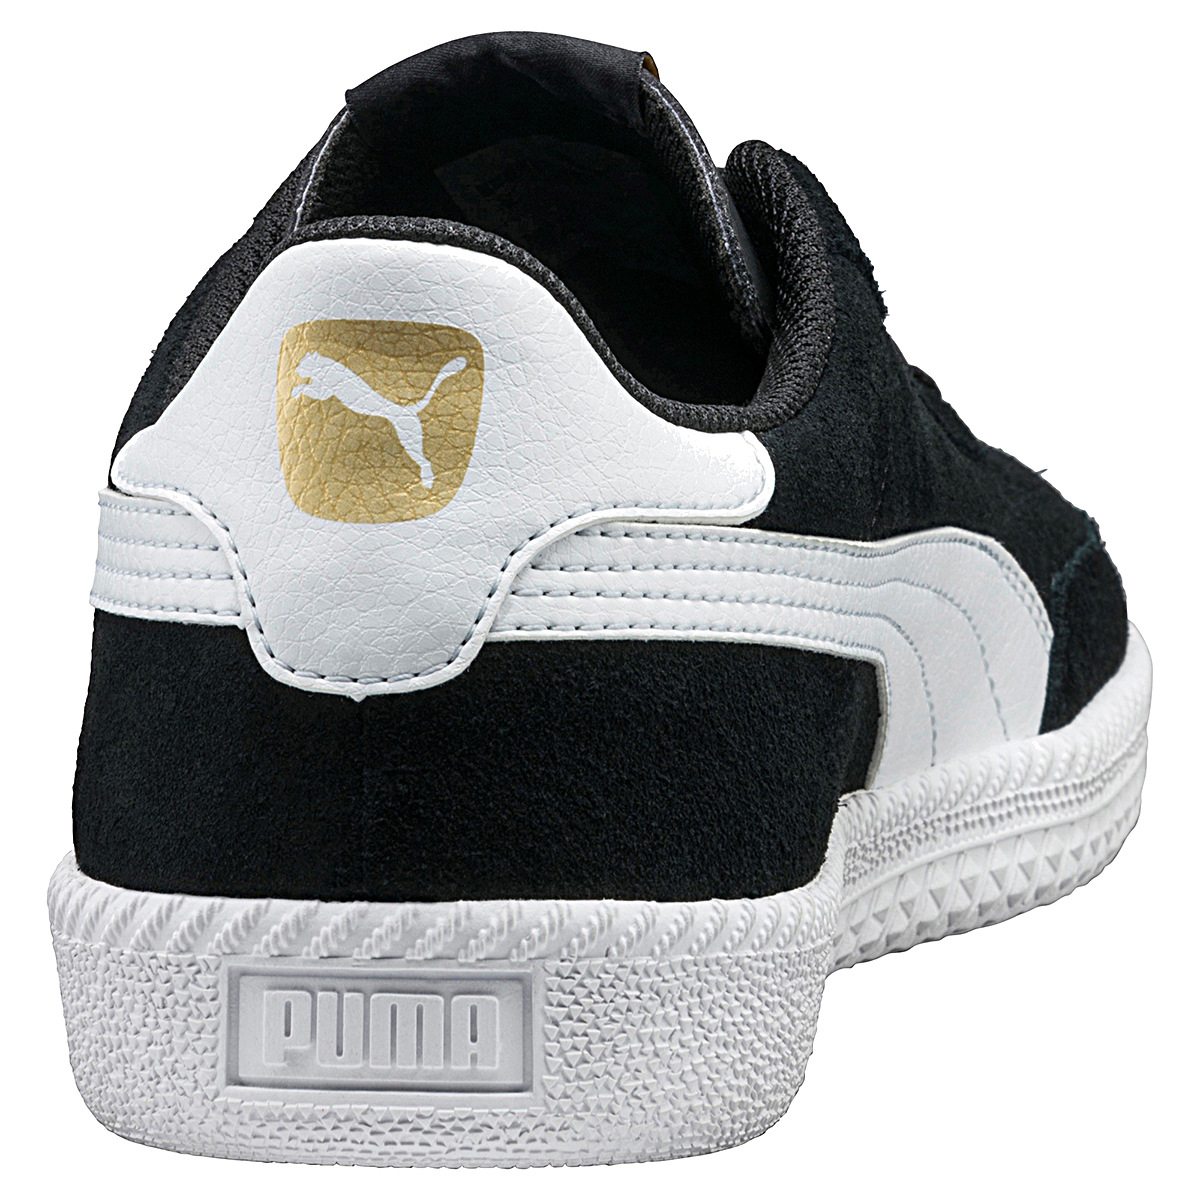 Puma Astro Cup Herren Sneaker Low-Top schwarz 364423 02